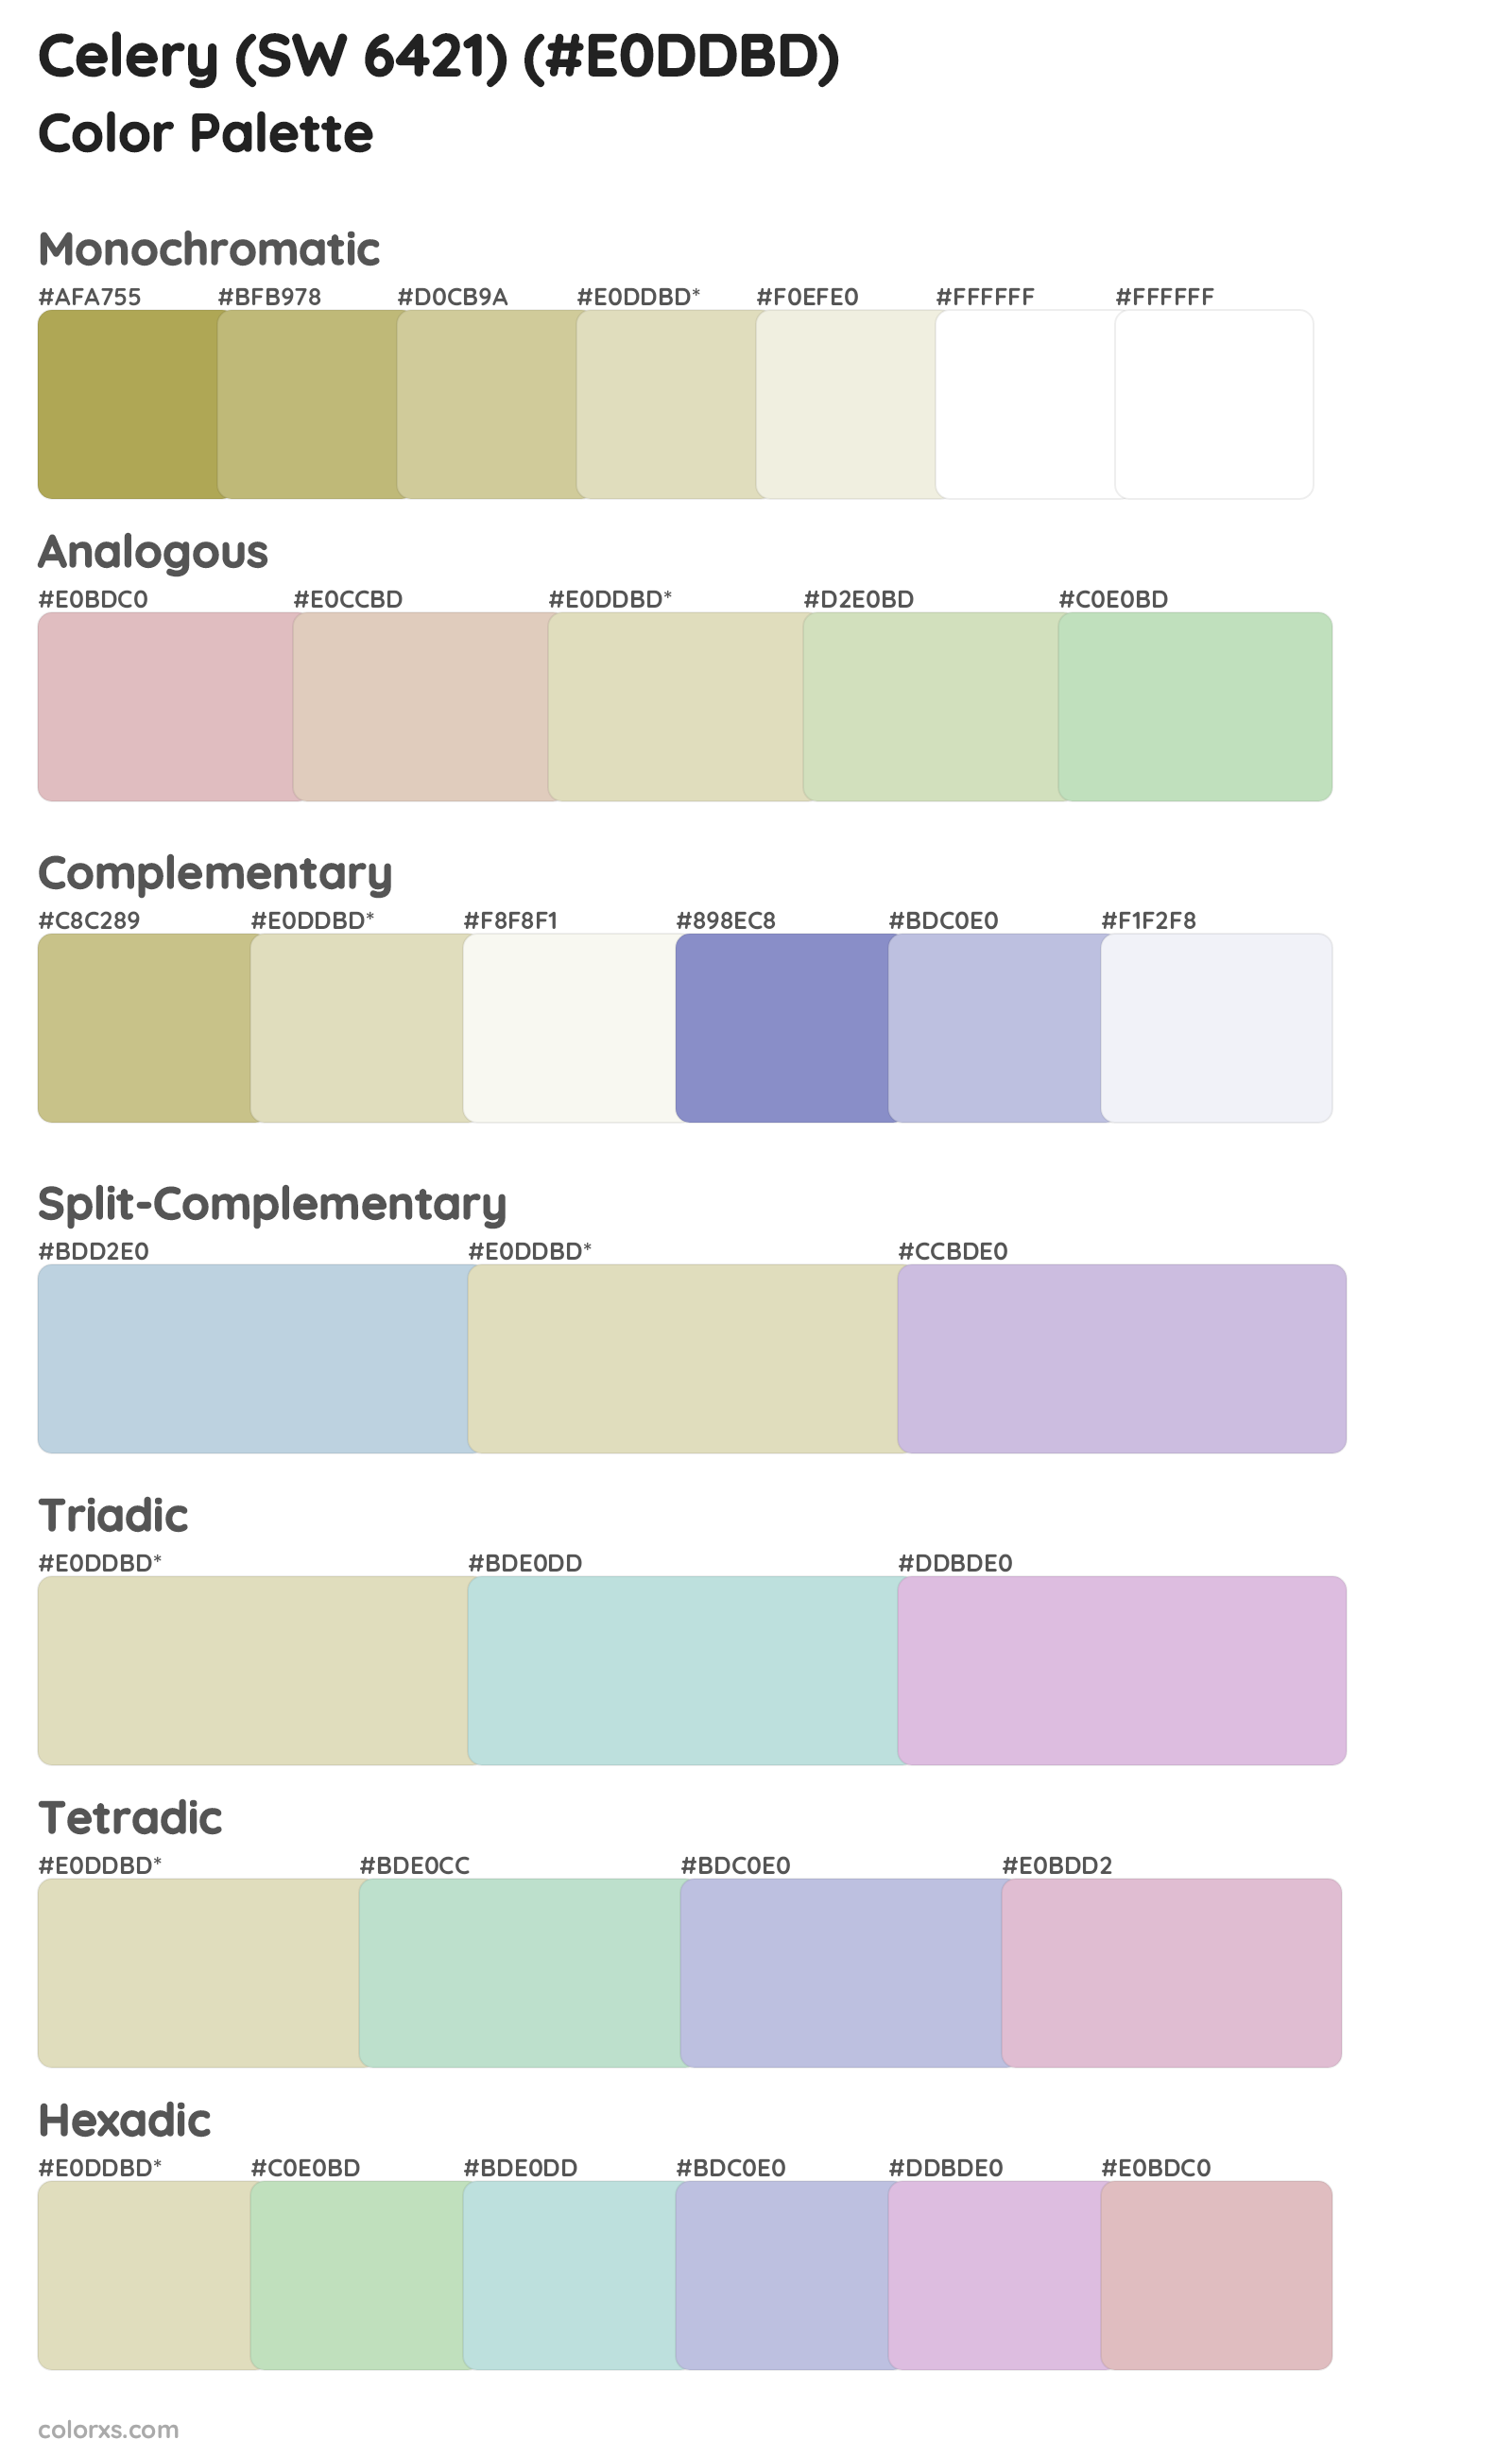 Celery (SW 6421) Color Scheme Palettes